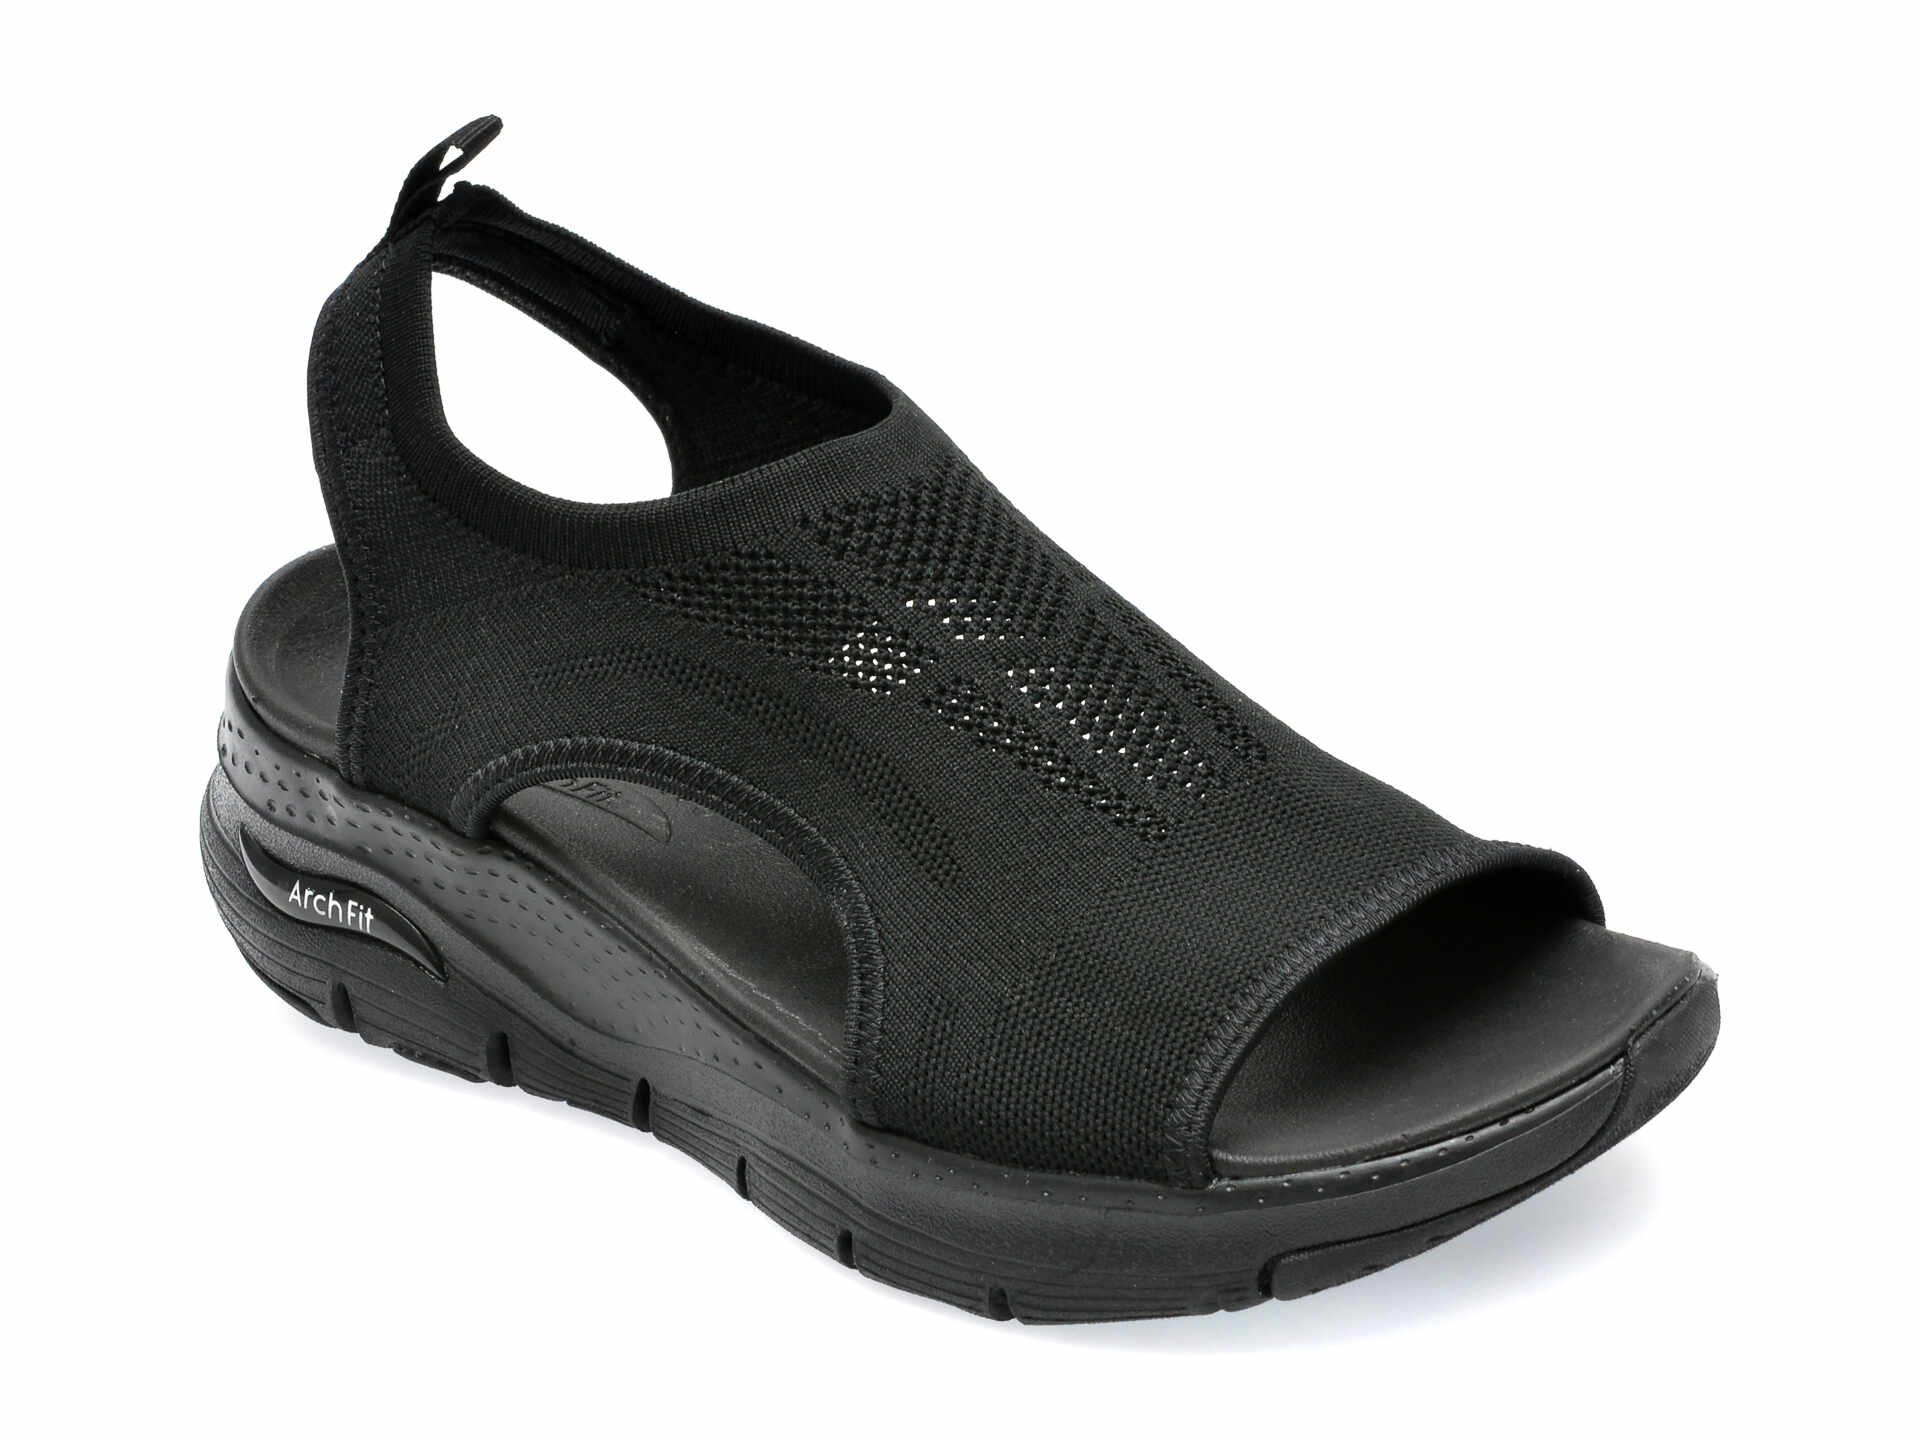 Sandale SKECHERS negre, ARCH FIT, din material textil